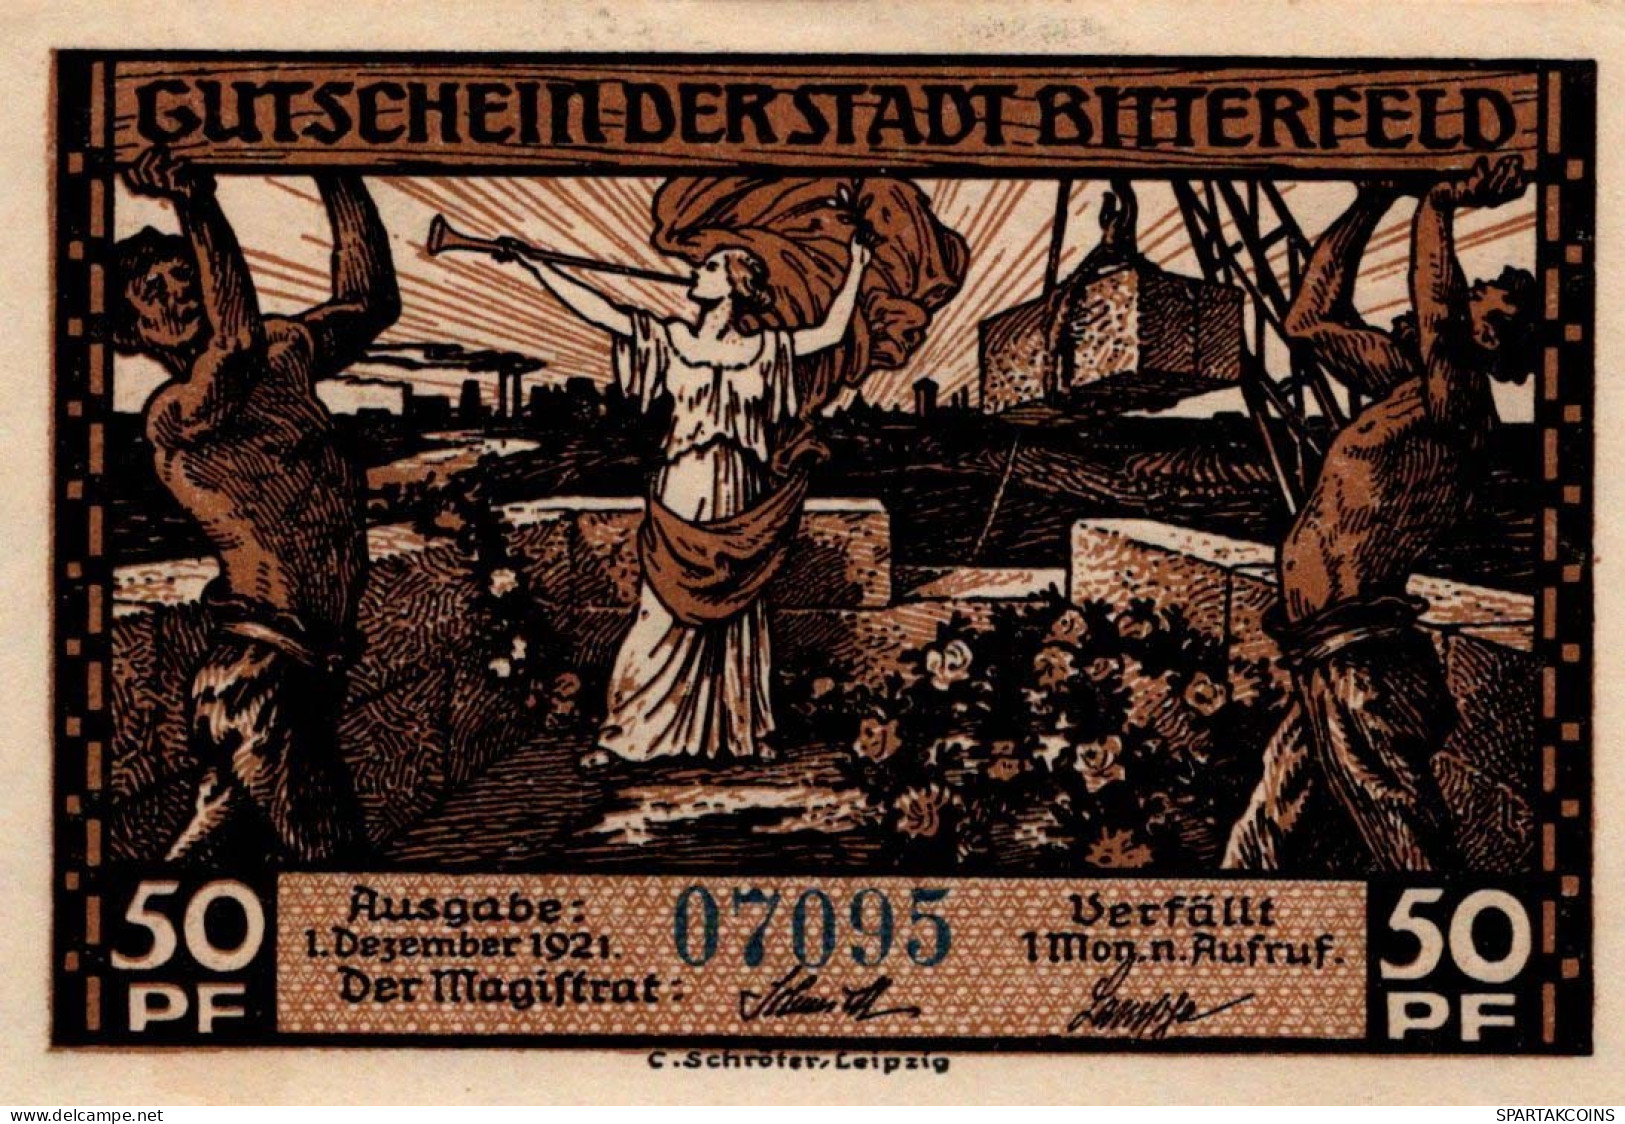 50 PFENNIG 1921 Stadt BITTERFIELD Westphalia UNC DEUTSCHLAND Notgeld #PA227 - [11] Lokale Uitgaven